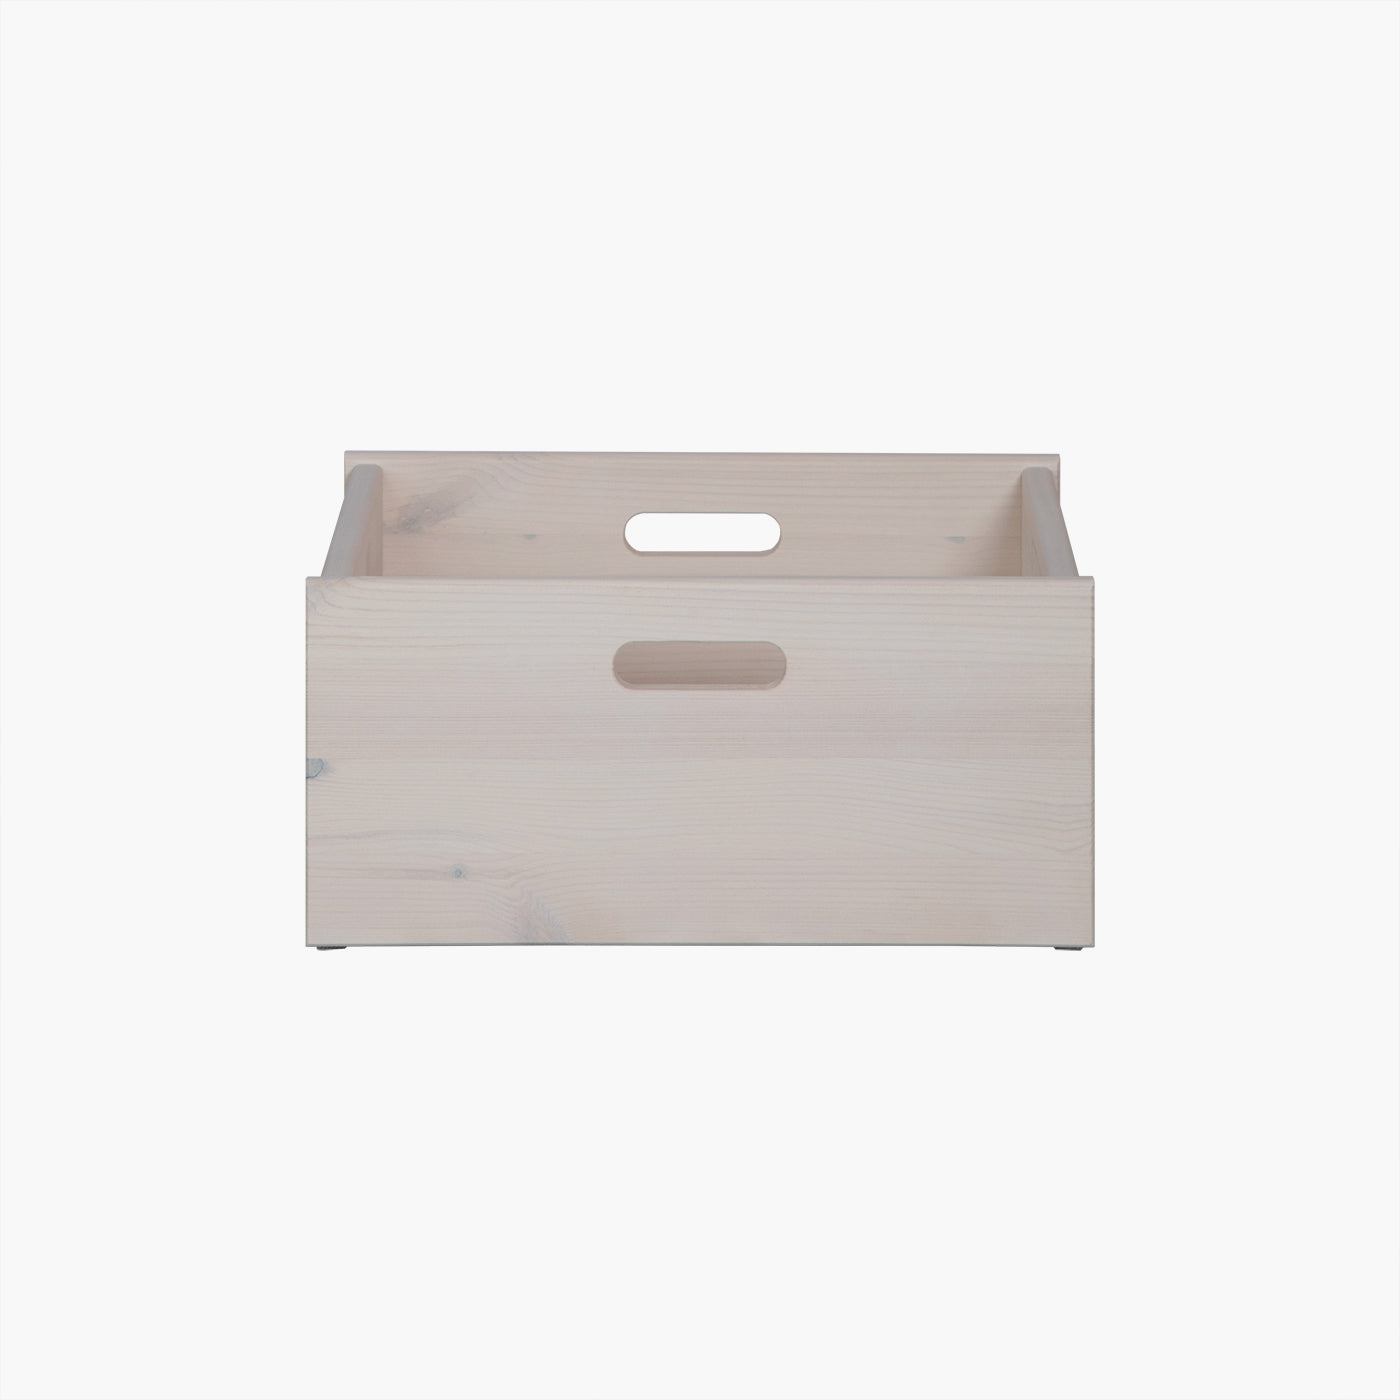 Dana kasse - lav - Hvid | Vælg mellem 30 cm eller 40 cm i dybden.